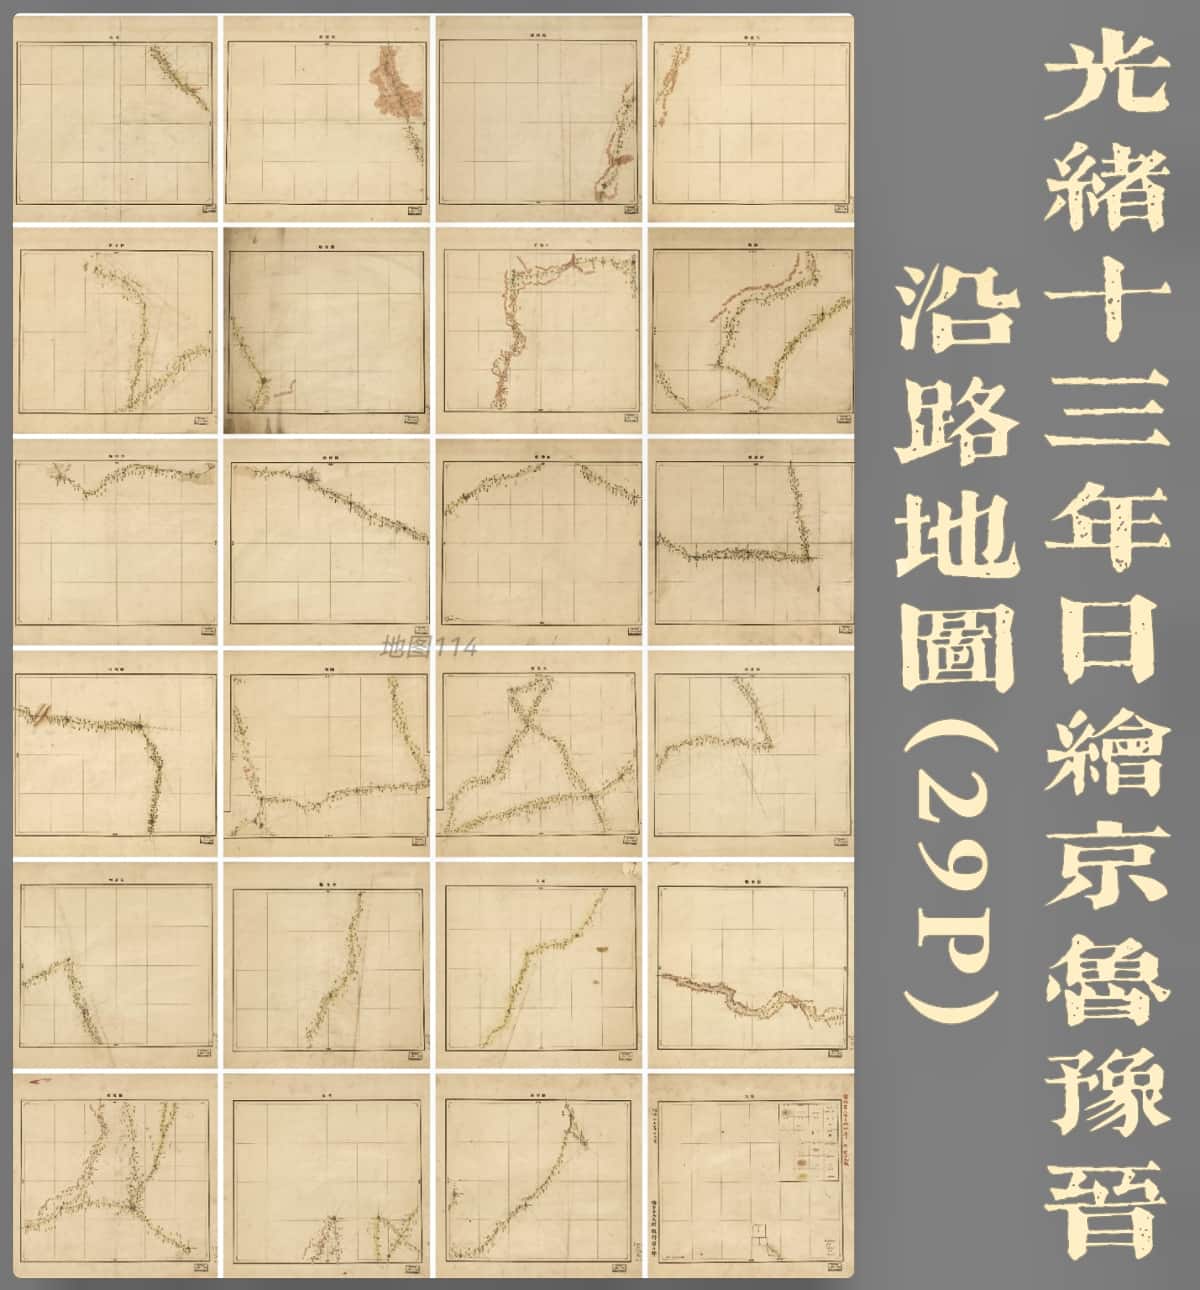 1887年日绘京鲁豫晋沿路地图(29P).jpg